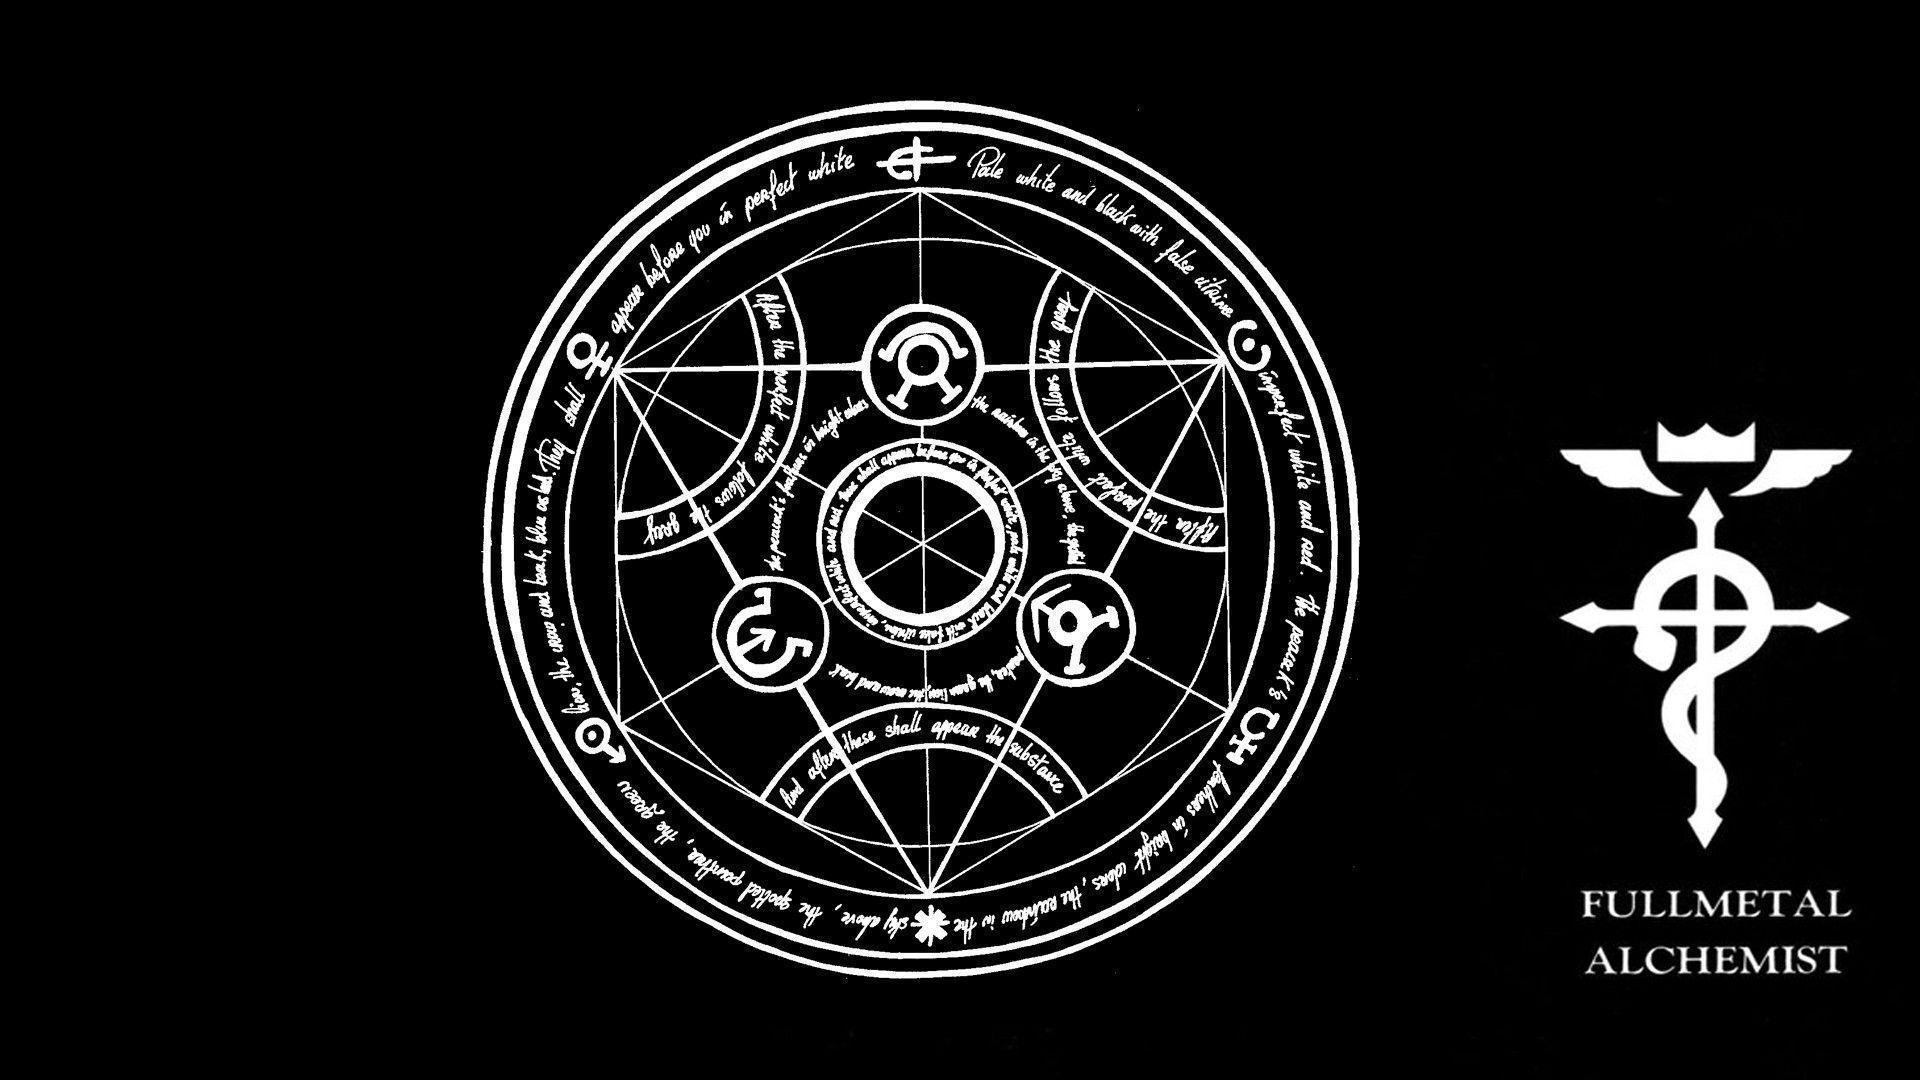 Wallpaper For > Fullmetal Alchemist Wallpaper Logo